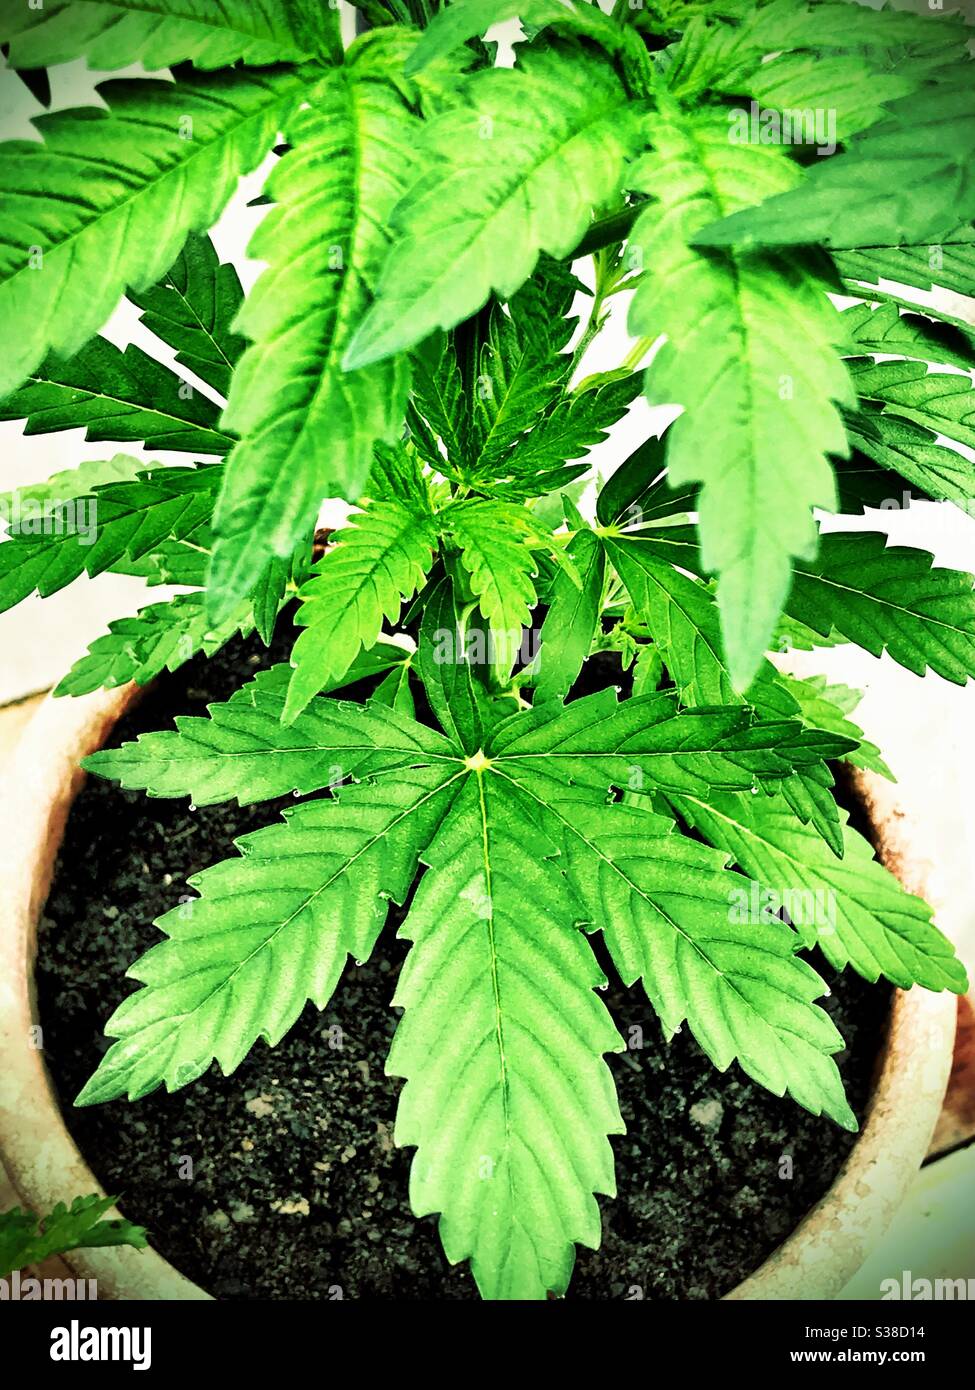 Marijuana cannabis sativa plant in pot Stock Photo